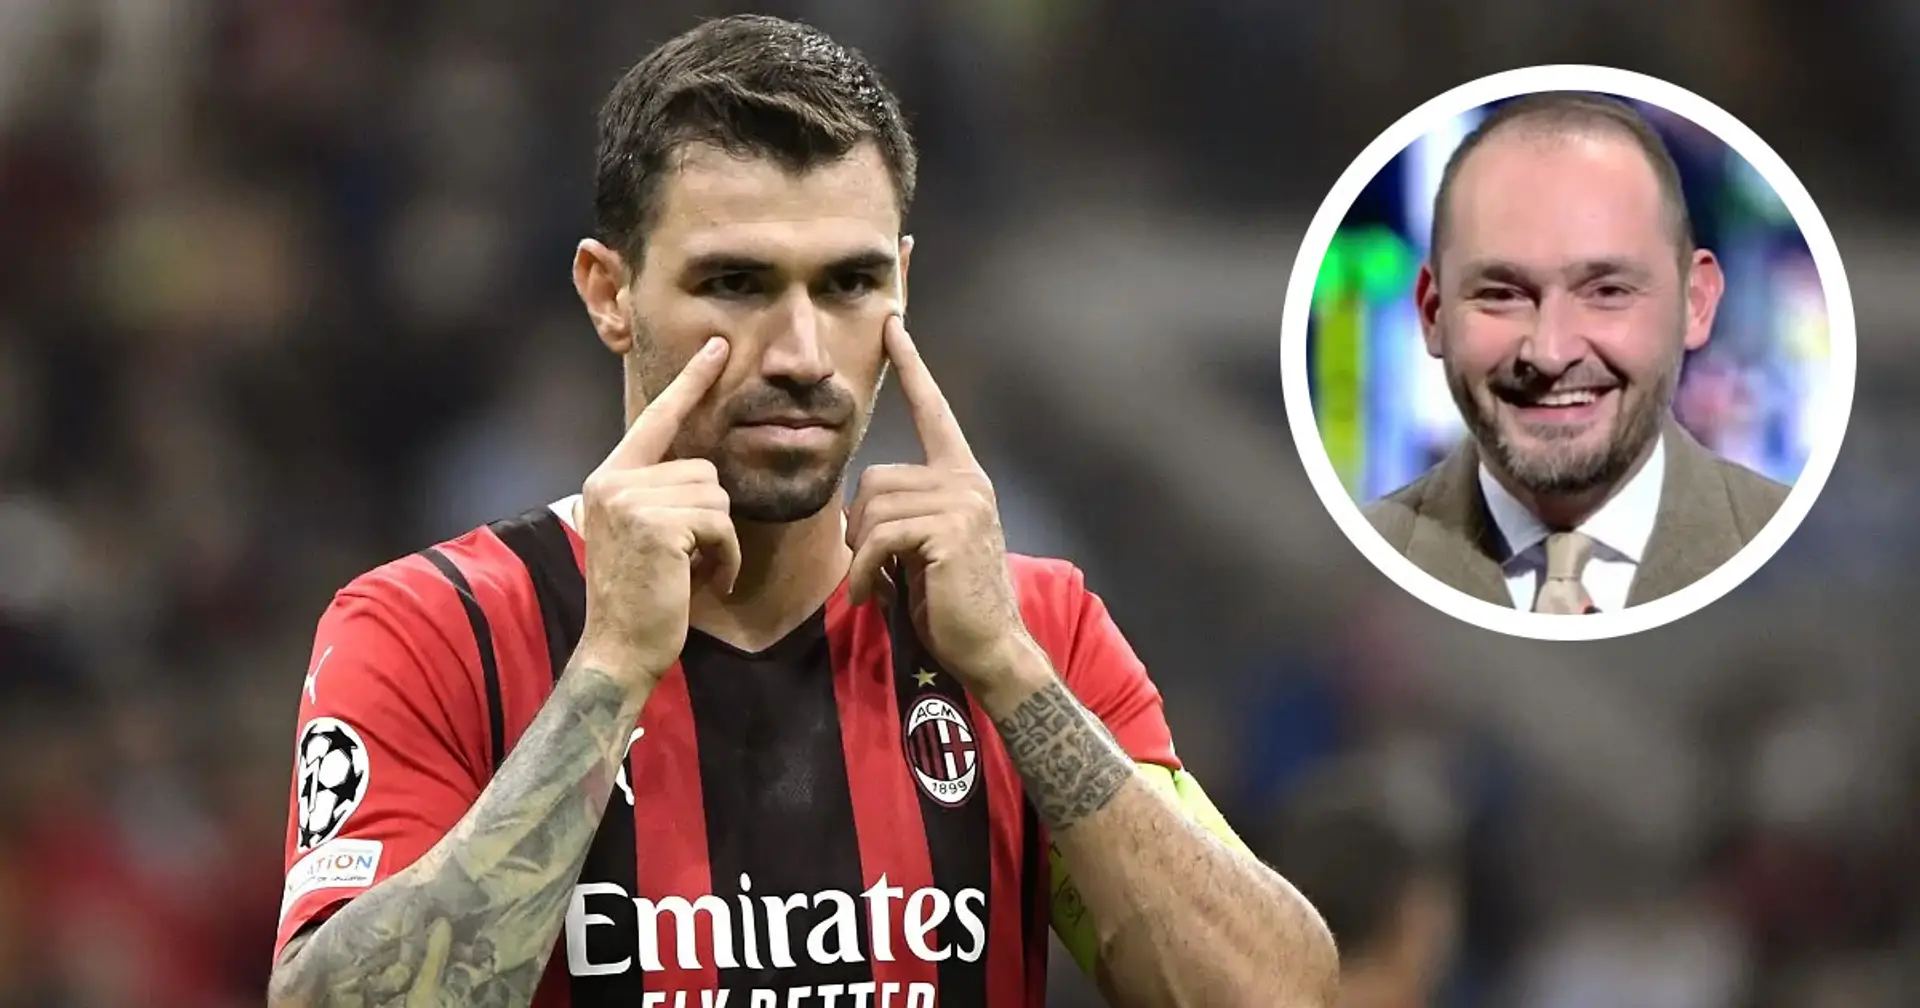 "Il Milan vuole confermare Romagnoli", Di Marzio fa il punto della situazione sul rinnovo del capitano rossonero